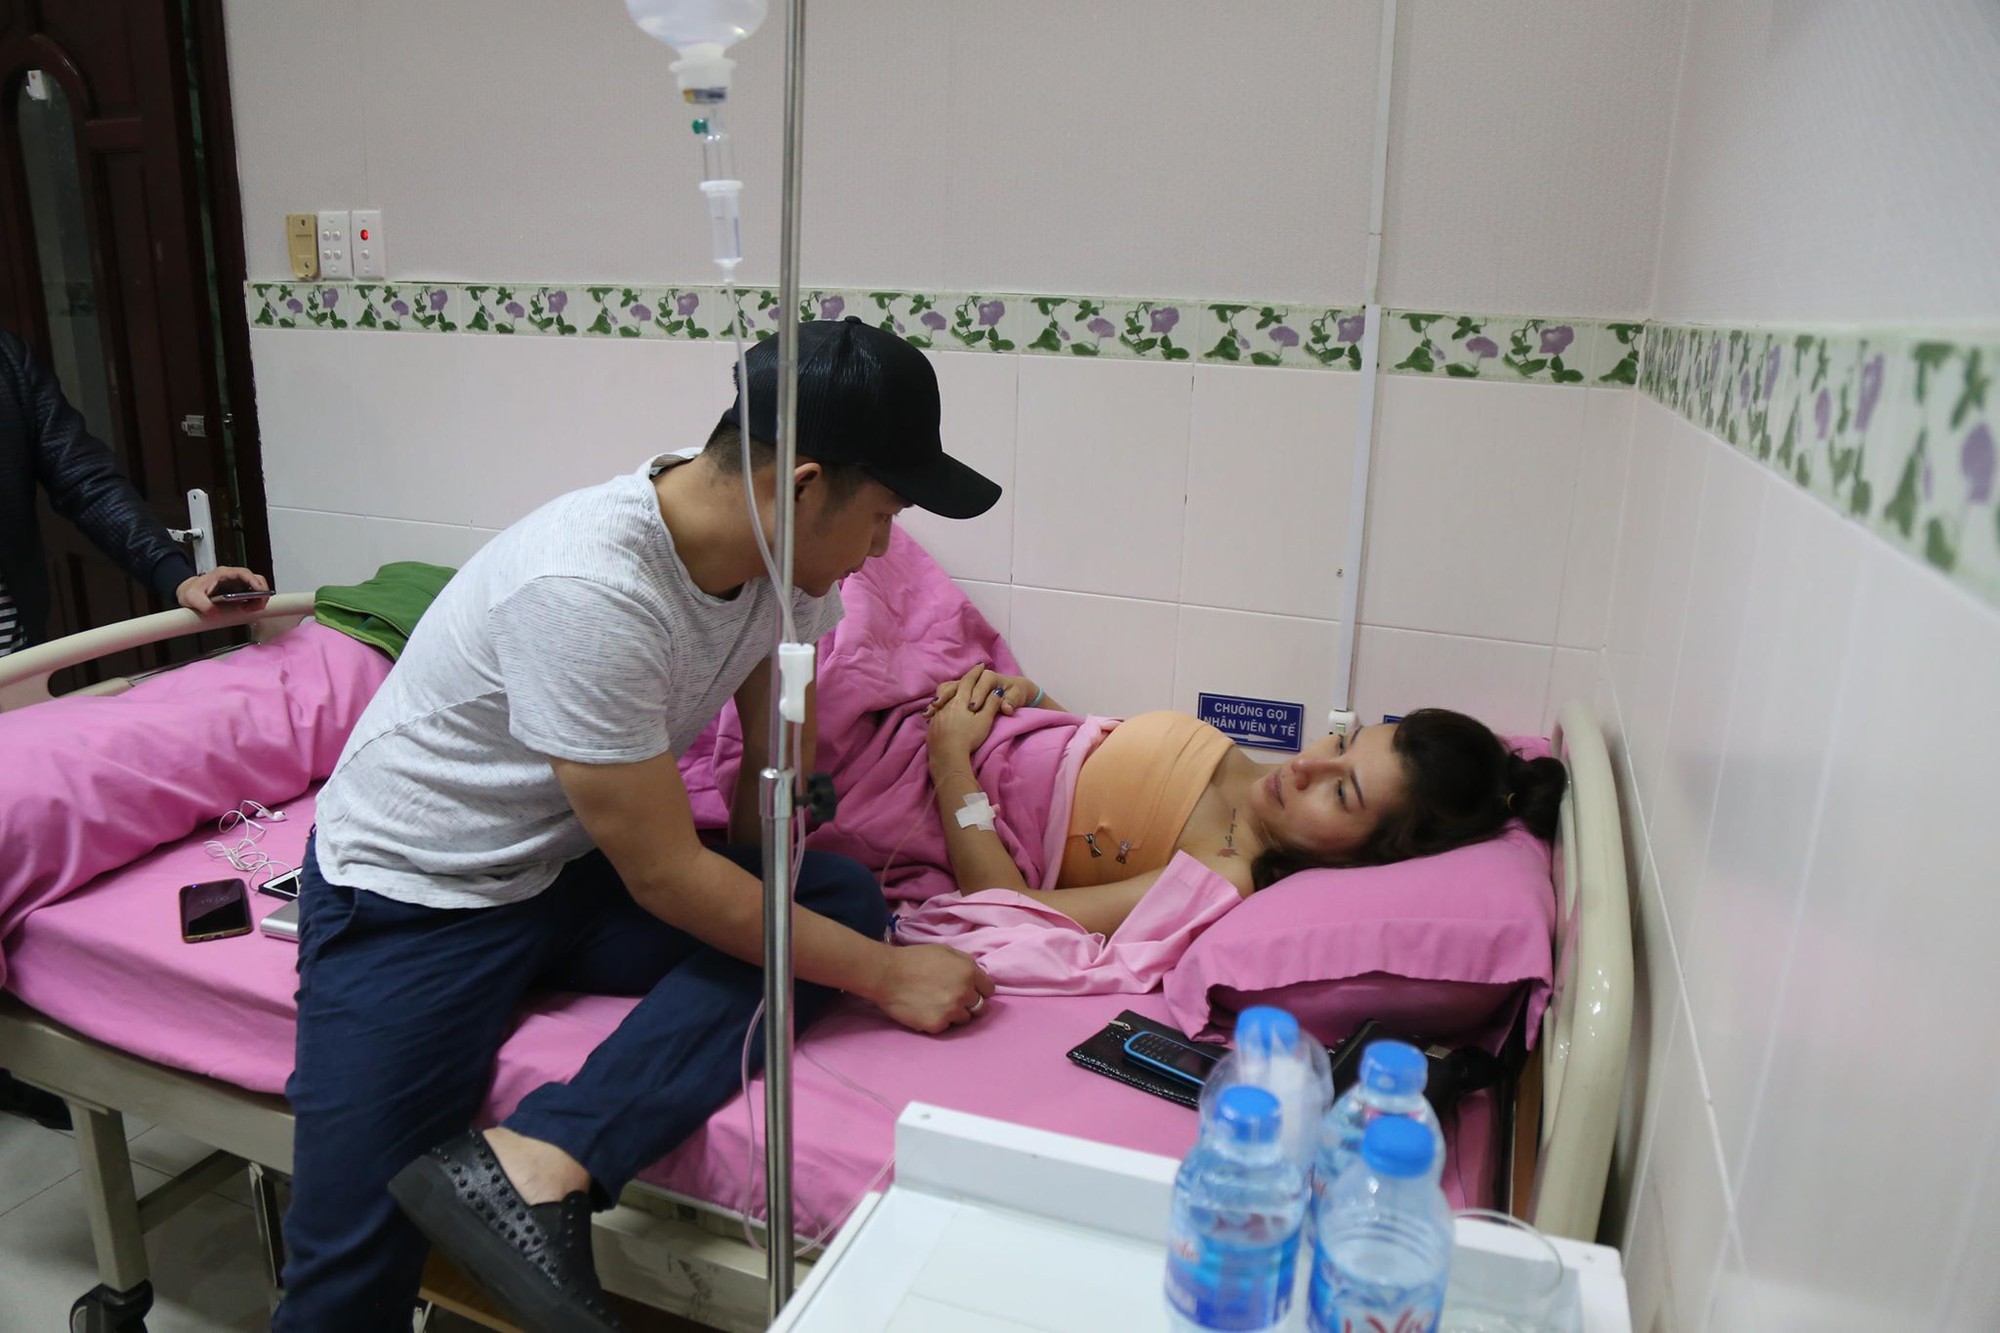 Em gái kết nghĩa của ca sĩ Quách Tuấn Du bất ngờ nhập viện, nghi bị vỡ túi ngực trên máy bay - Ảnh 7.